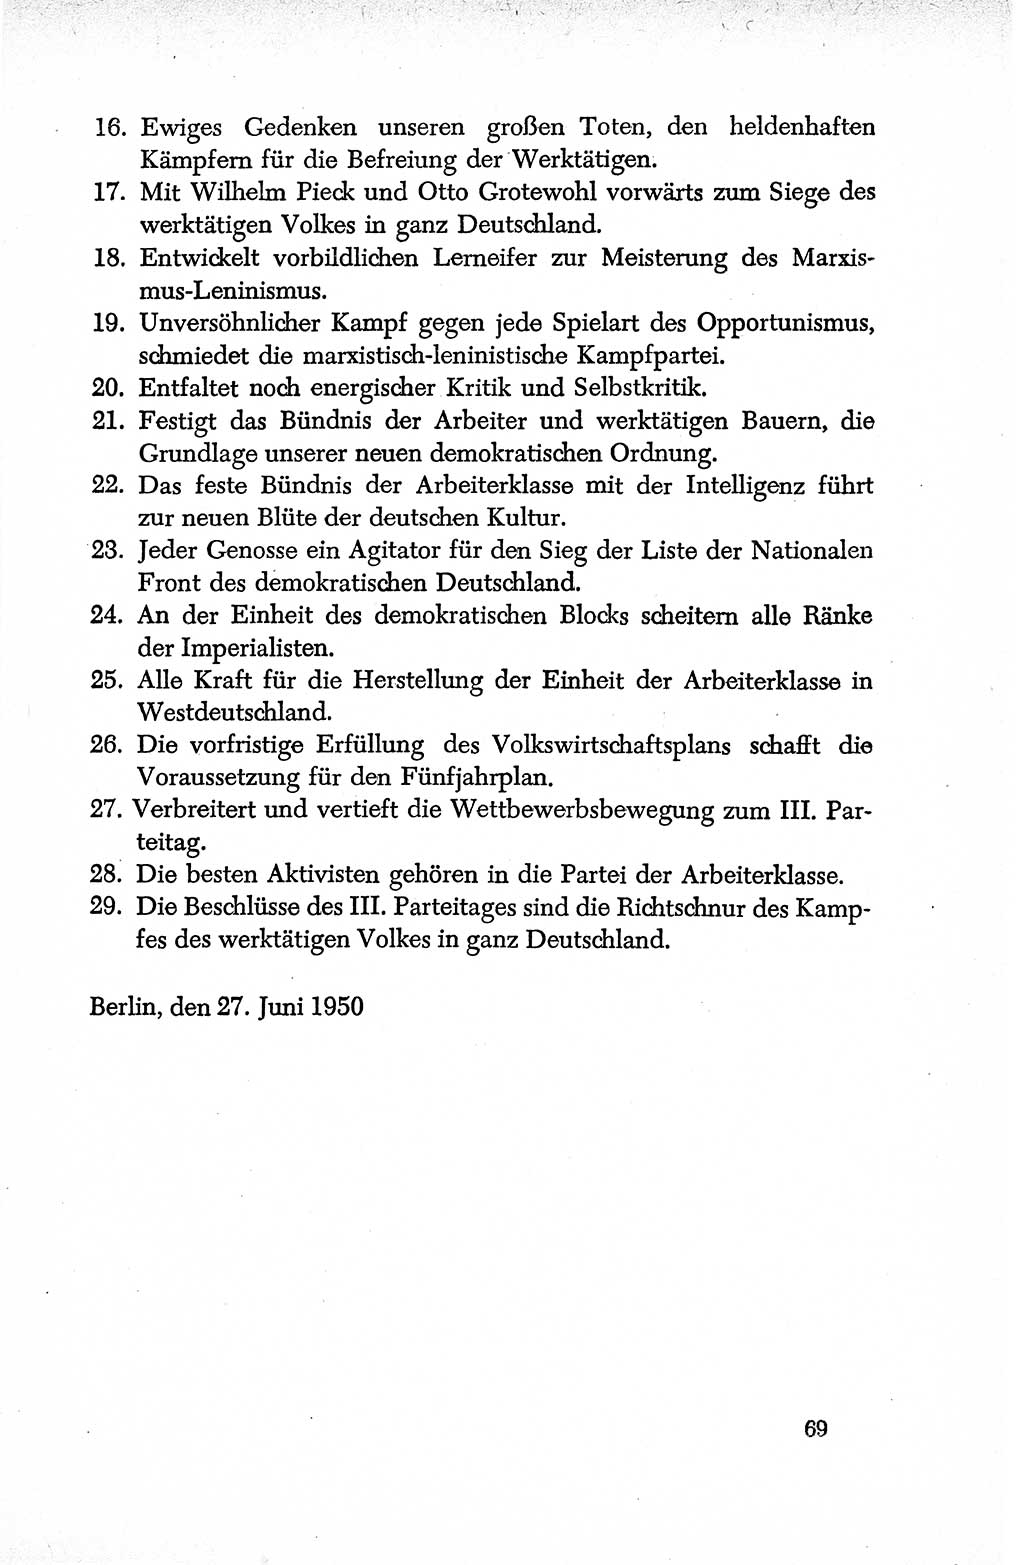 Dokumente der Sozialistischen Einheitspartei Deutschlands (SED) [Deutsche Demokratische Republik (DDR)] 1950-1952, Seite 69 (Dok. SED DDR 1950-1952, S. 69)